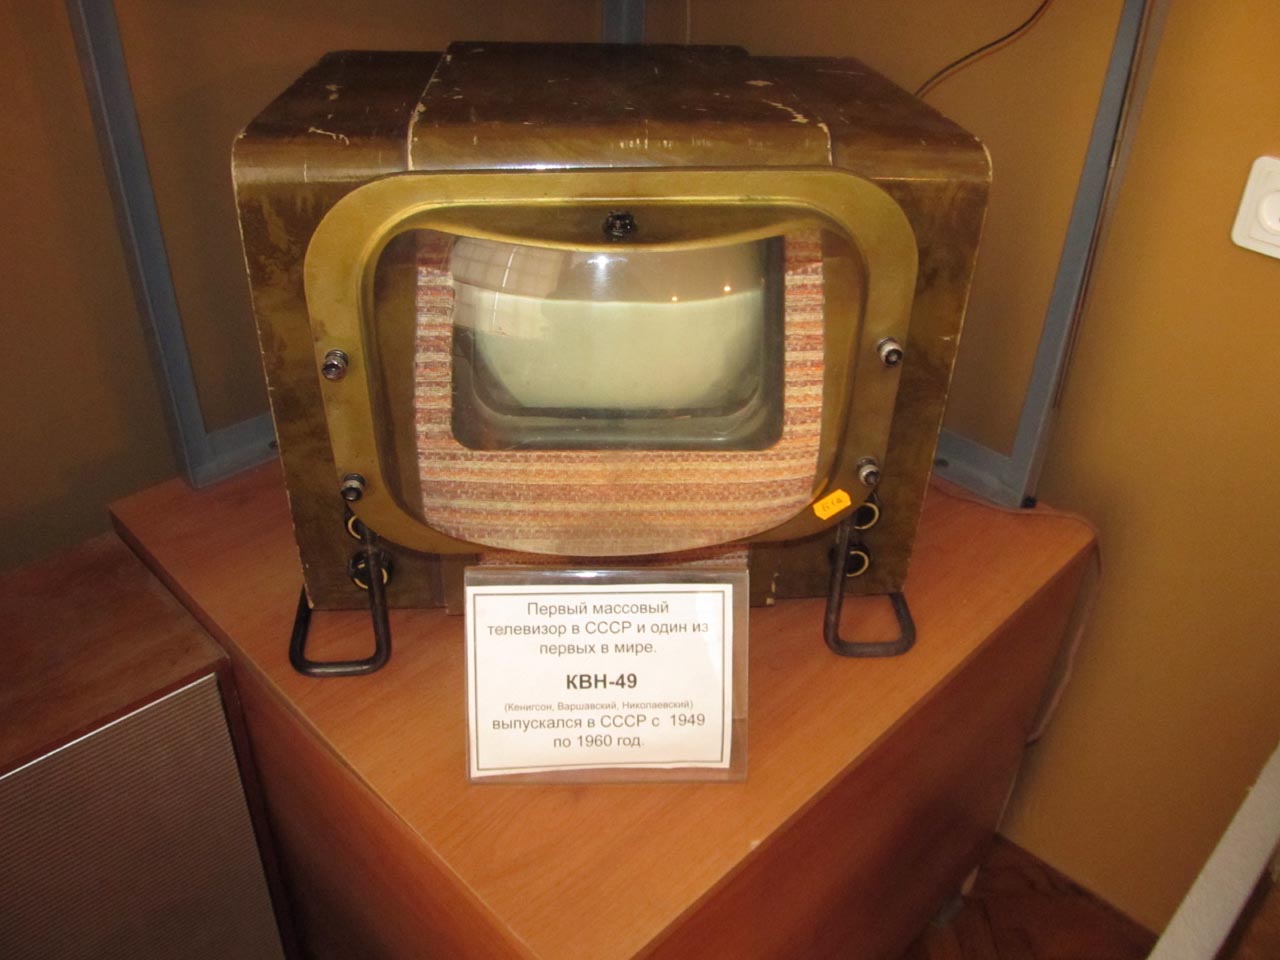 В преддверии Дня смеха в Удмуртском филиале РТРС поделились оригинальной «расшифровкой» телевизионных терминов.